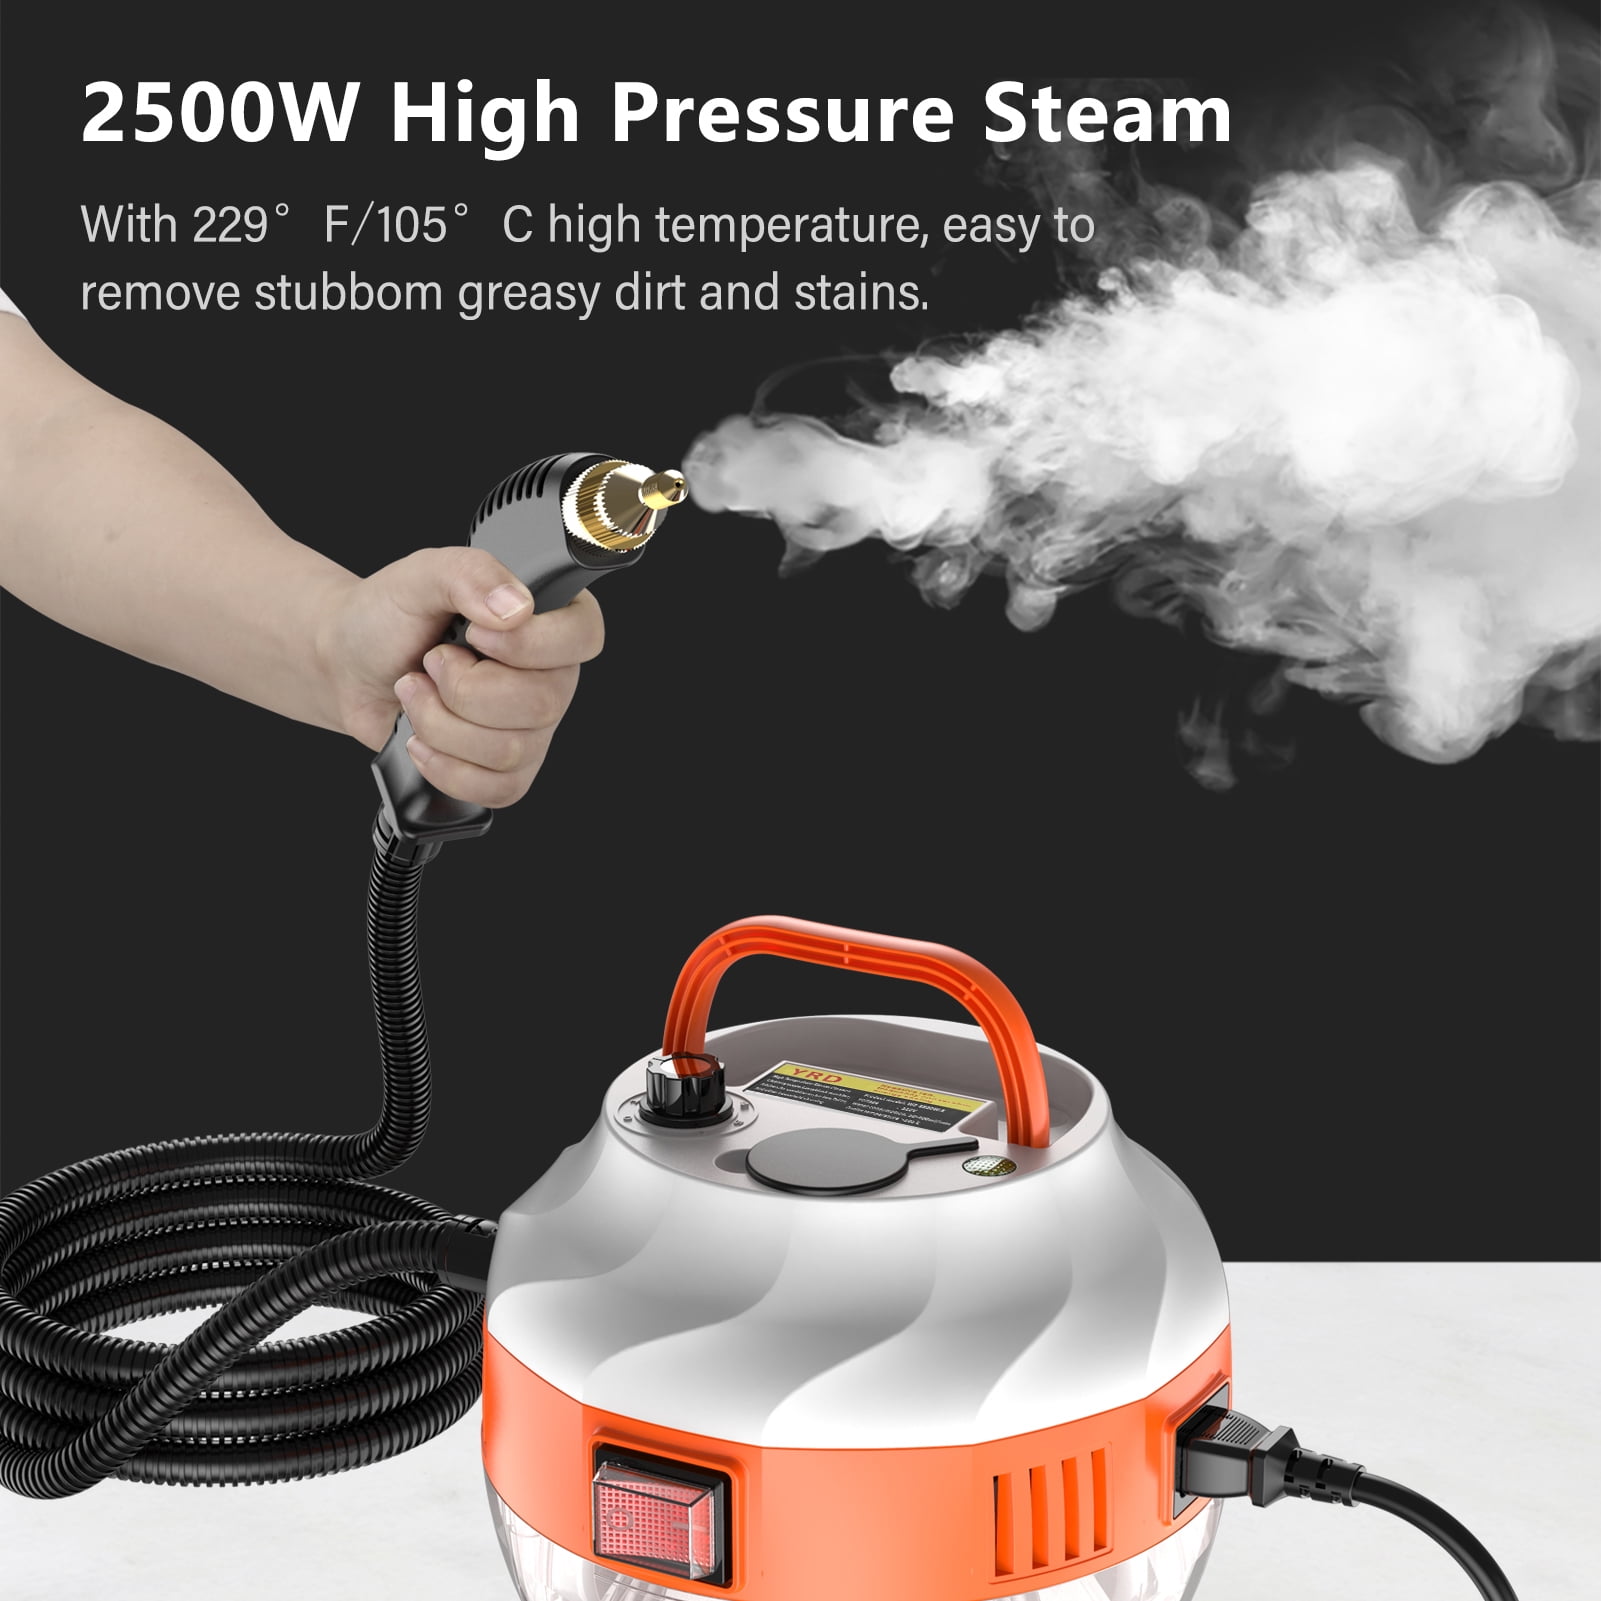 2500W Portable Handheld Steam Cleaner High Pressurized Steam